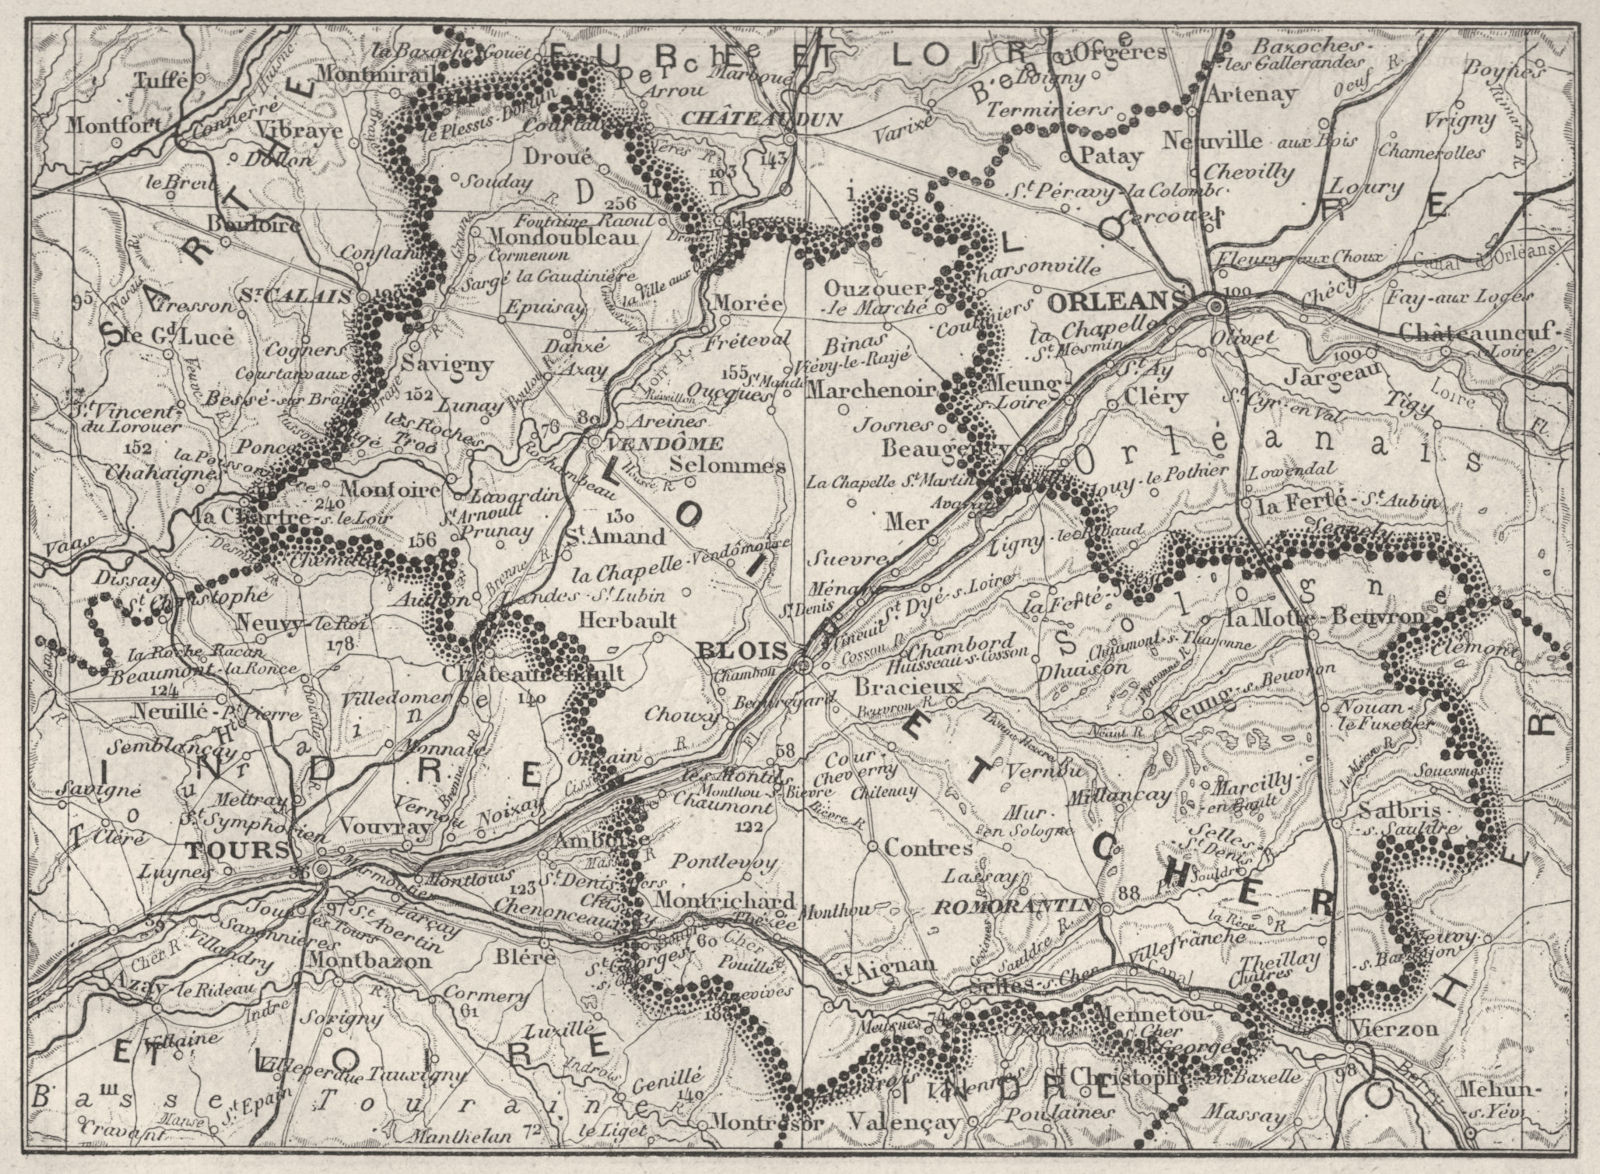 LOIR-ET-CHER. Loir-et-Cher 1878 old antique vintage map plan chart